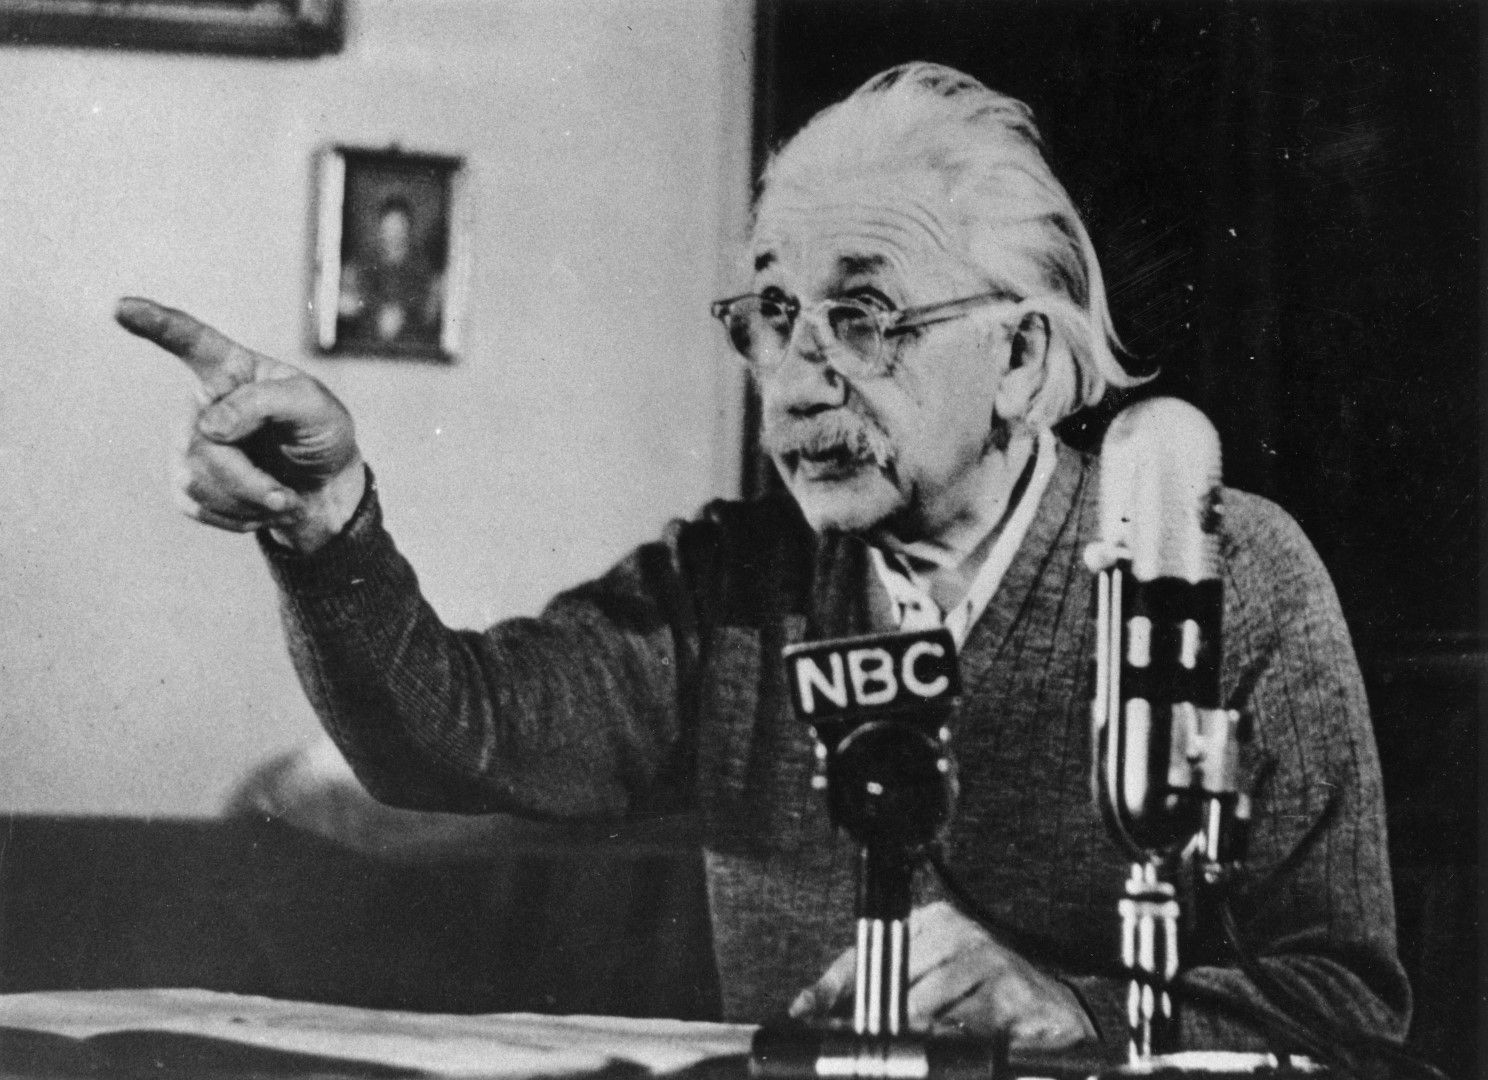 17 февруари 1950 г. Алберт Айнщайн говори публично в седмичното предаване на Елинор Рузвелт по NBC  и предупреждава за "общото унищожение", което ядрените оръжия могат да причинят